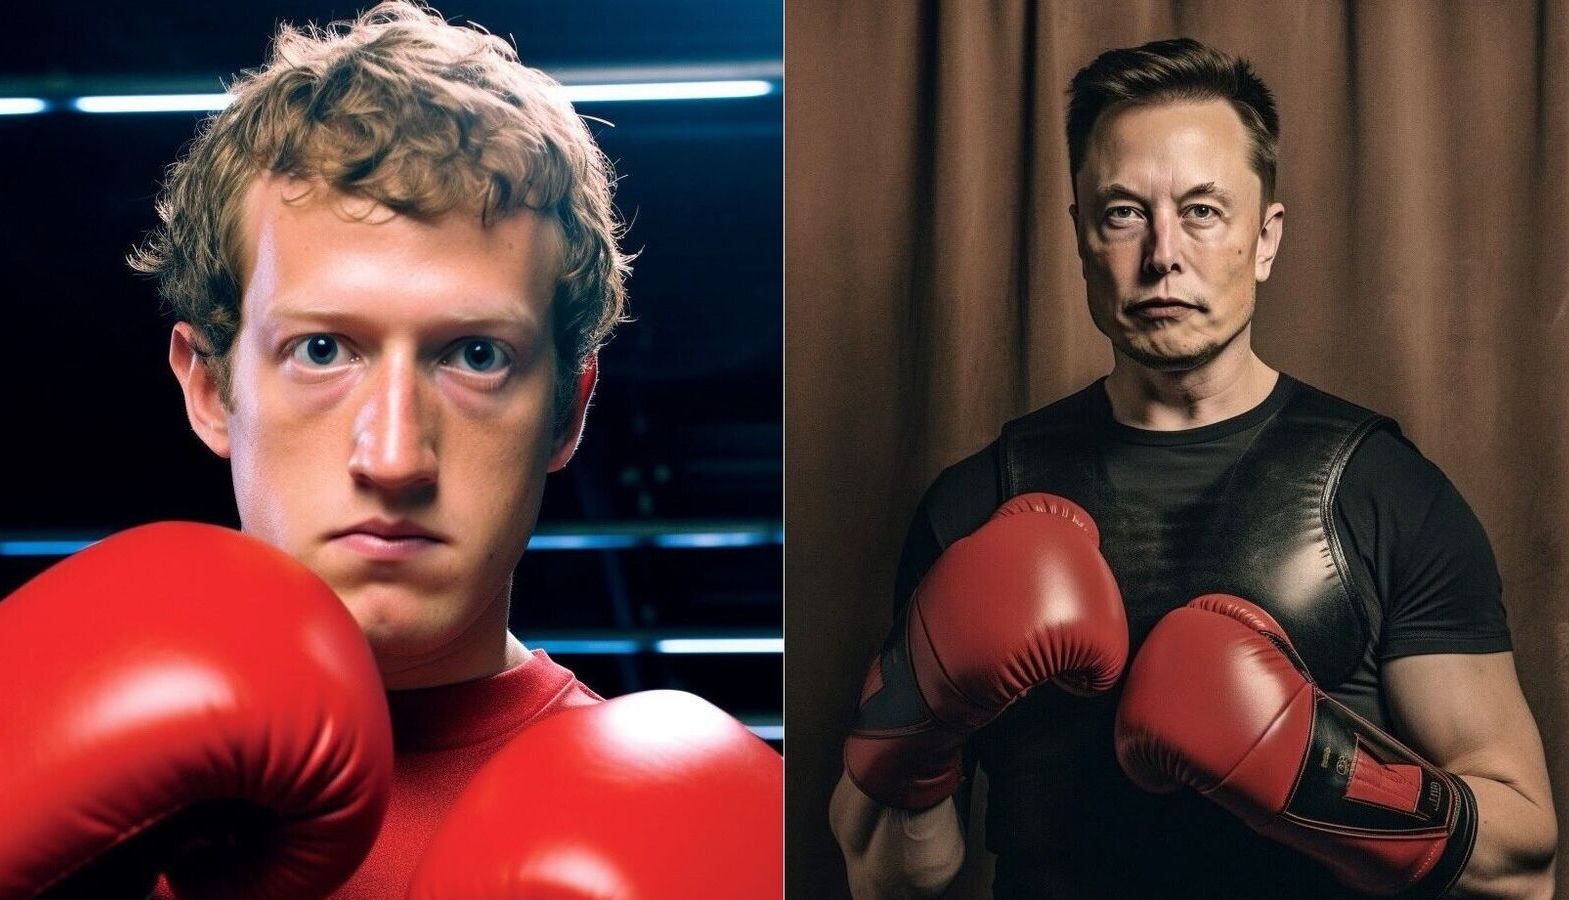 Состоится ли бой века? Илон Маск vs Марк Цукерберг. Кто кого?